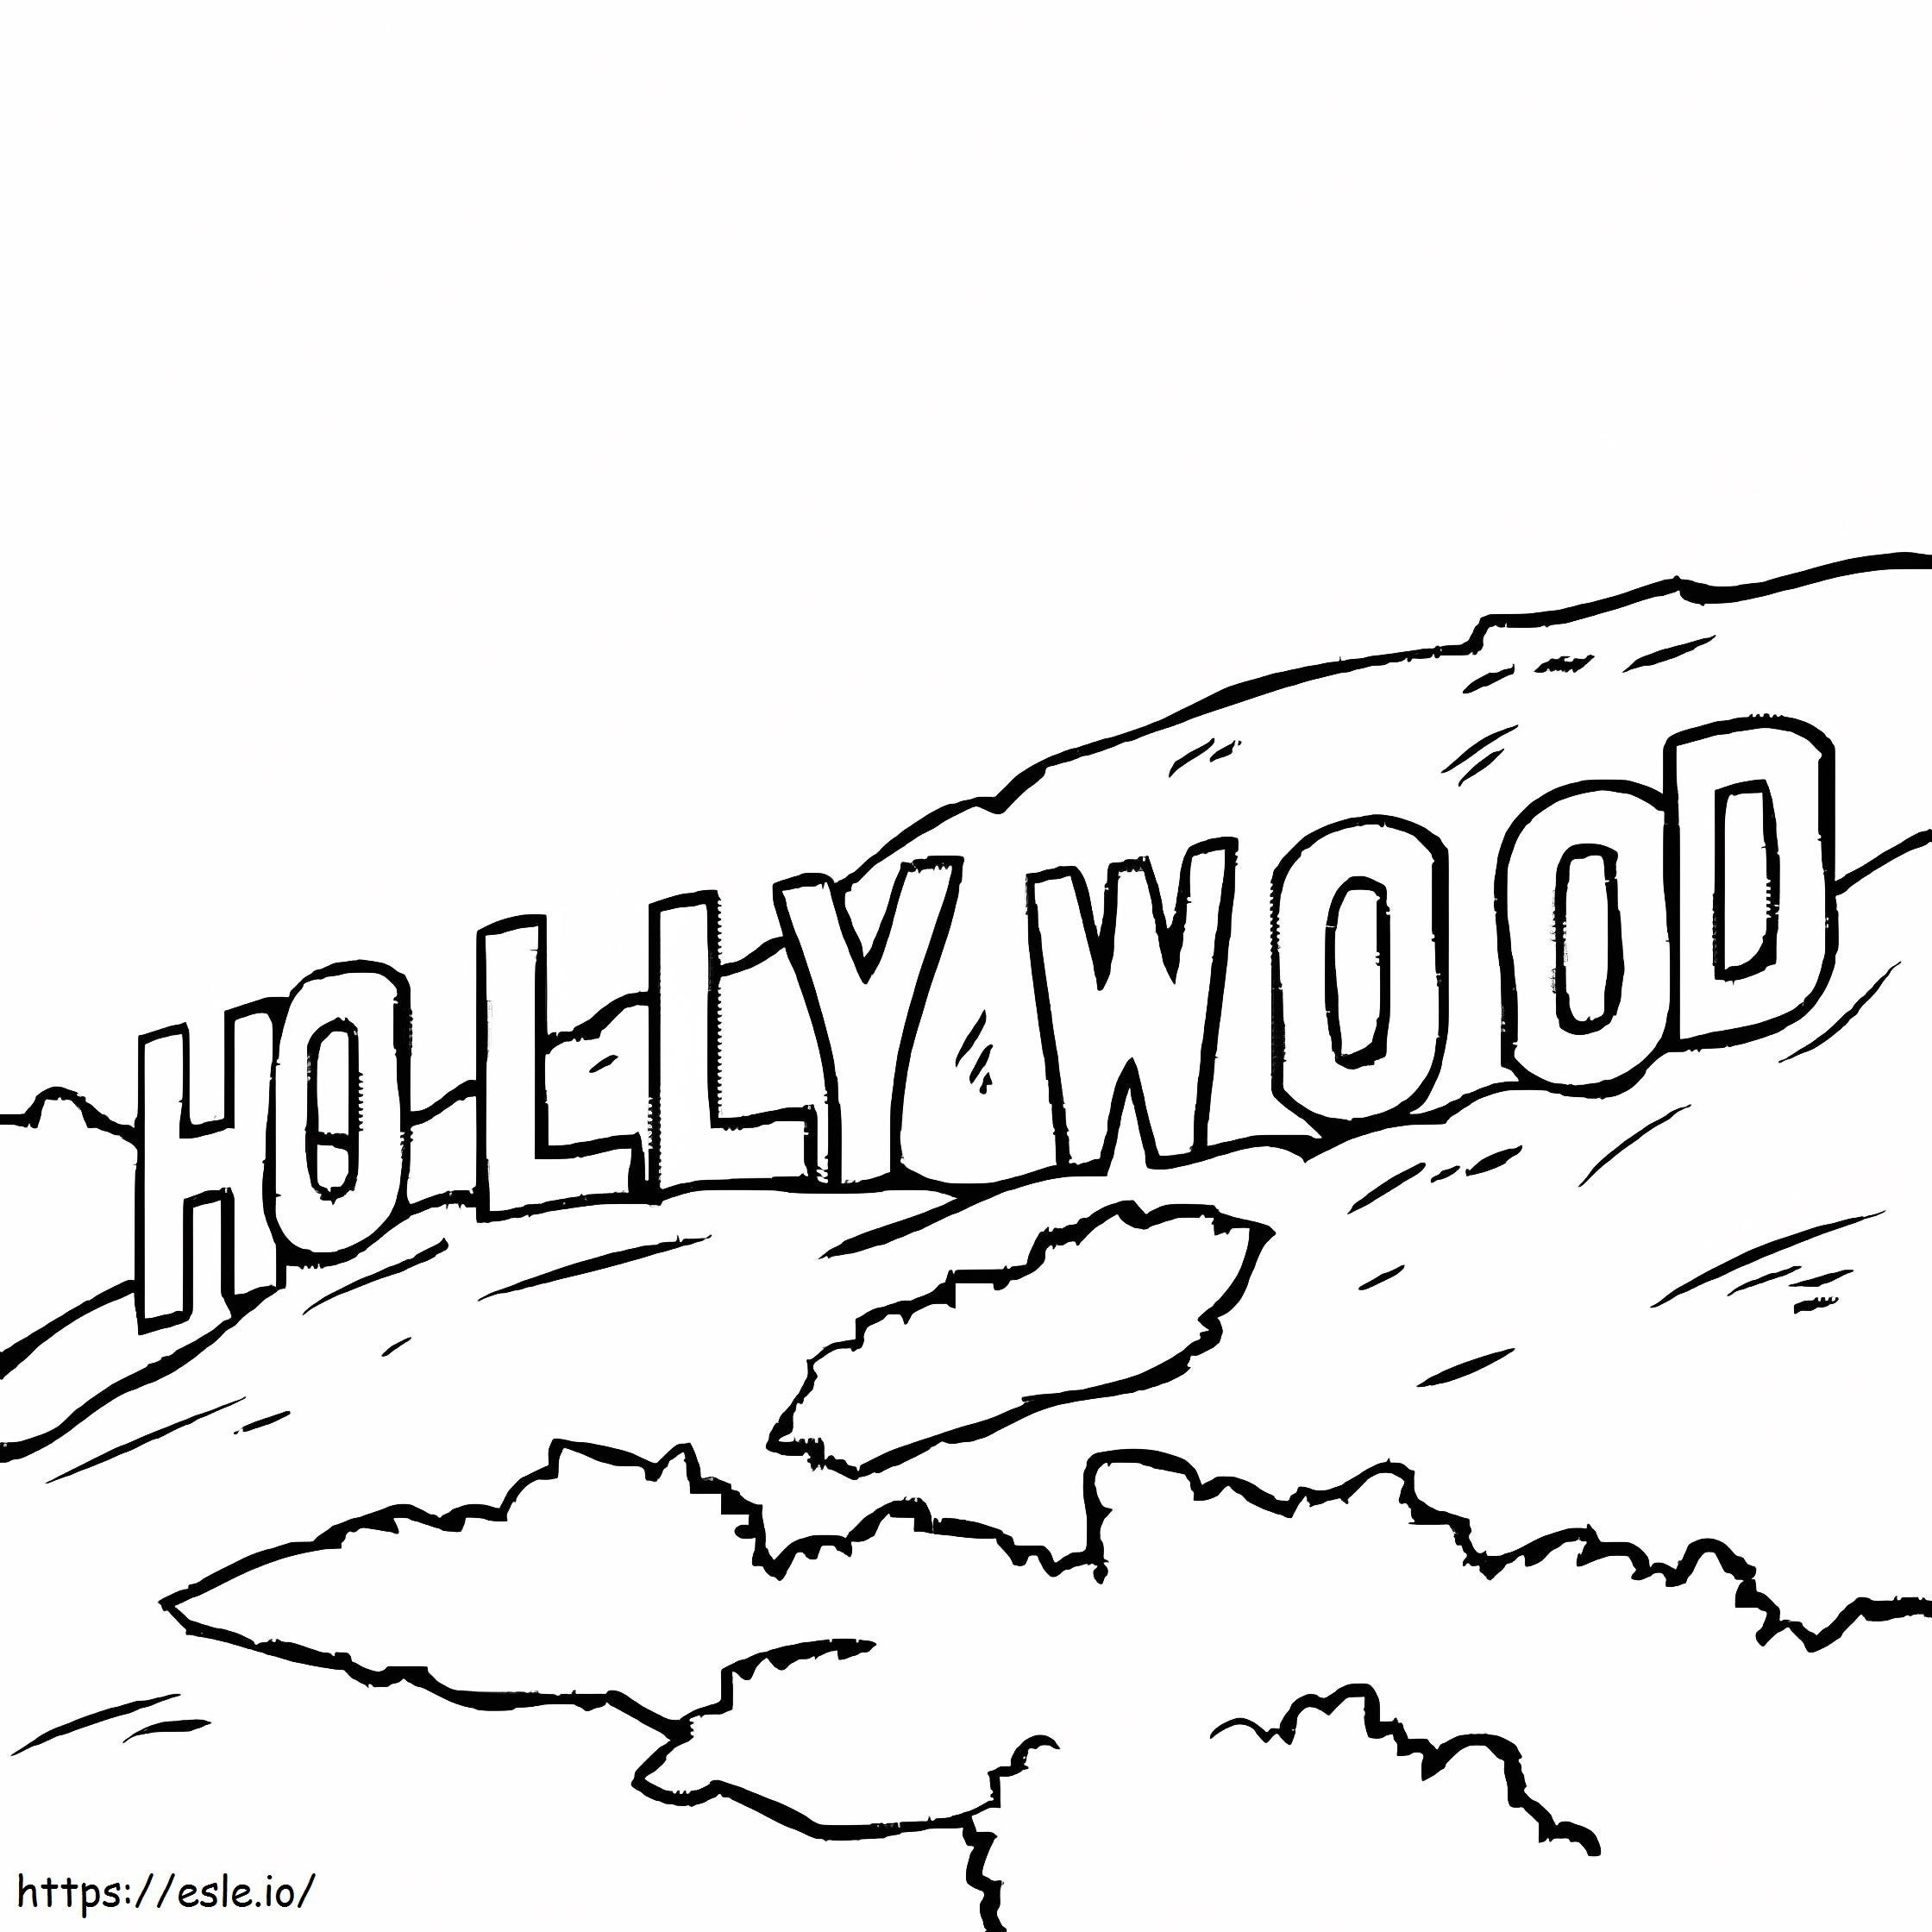 Stampa Hollywood da colorare